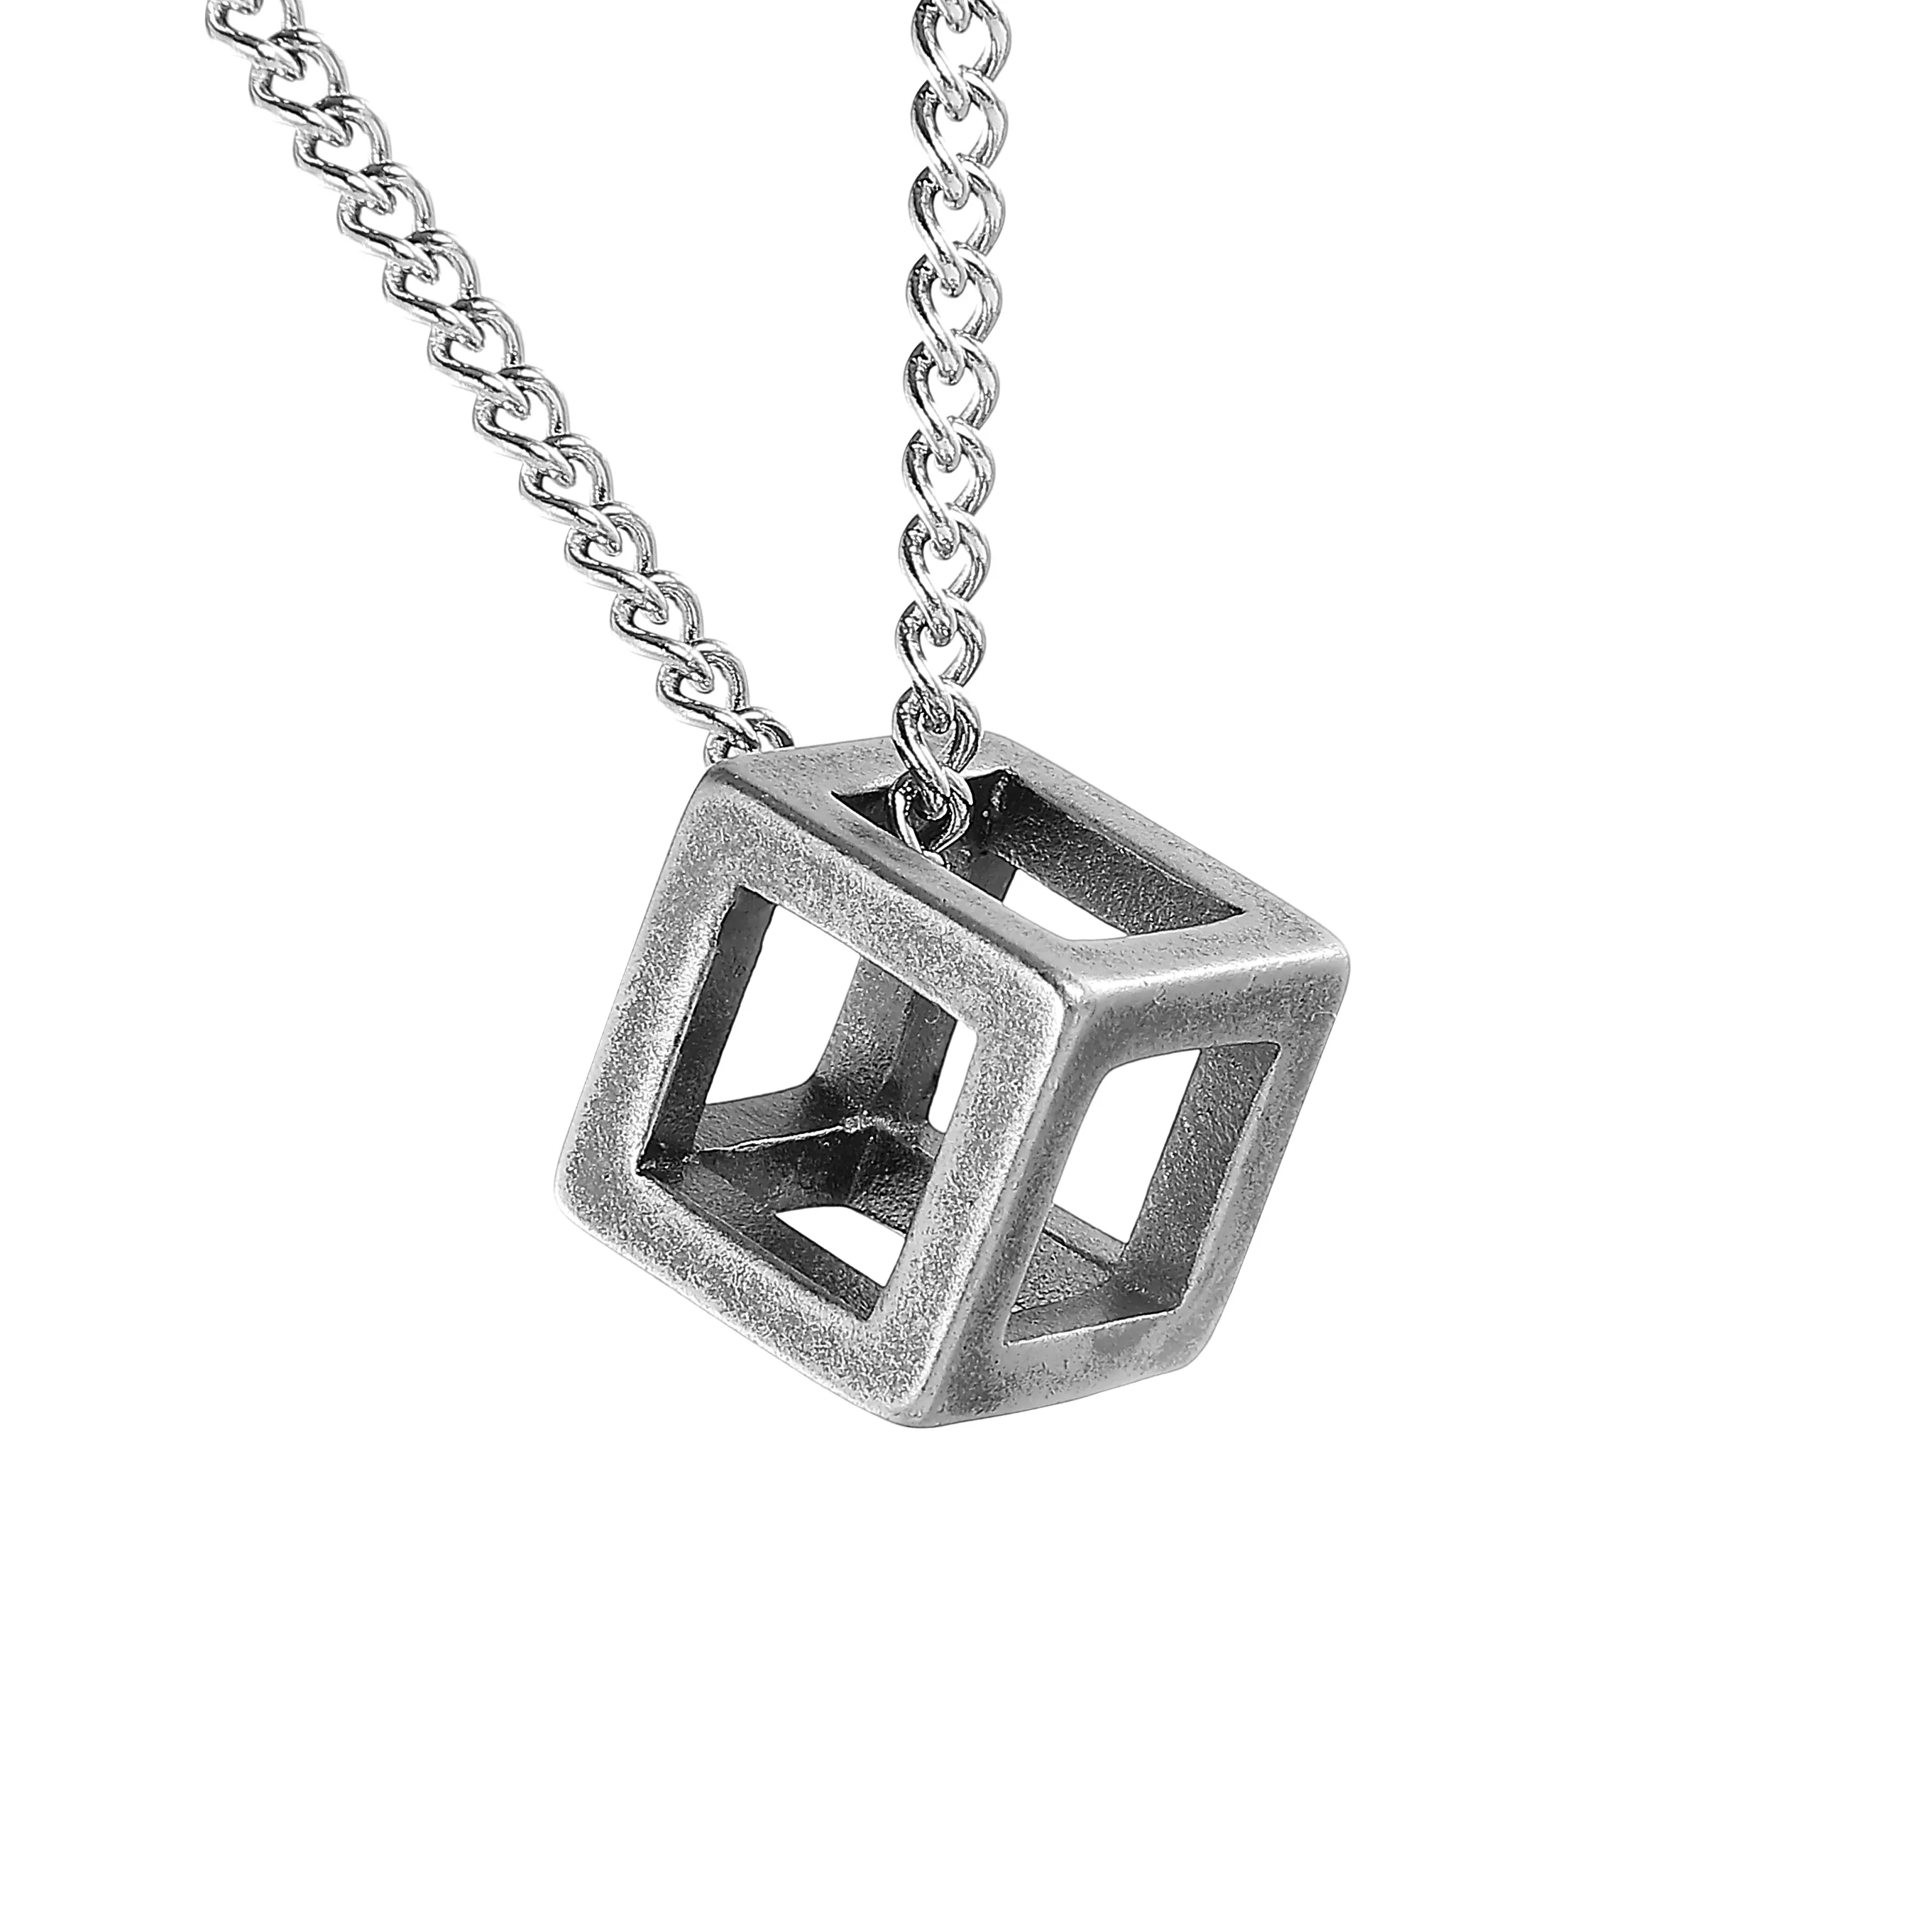 Simple Square Hollow Cube Charm Beast Cleans Cell Mechlace в из нержавеющей стали, 3D Cube ожерелье, полый кубический кулон ожерелье, геометрические украшения, минималистские ожерелье